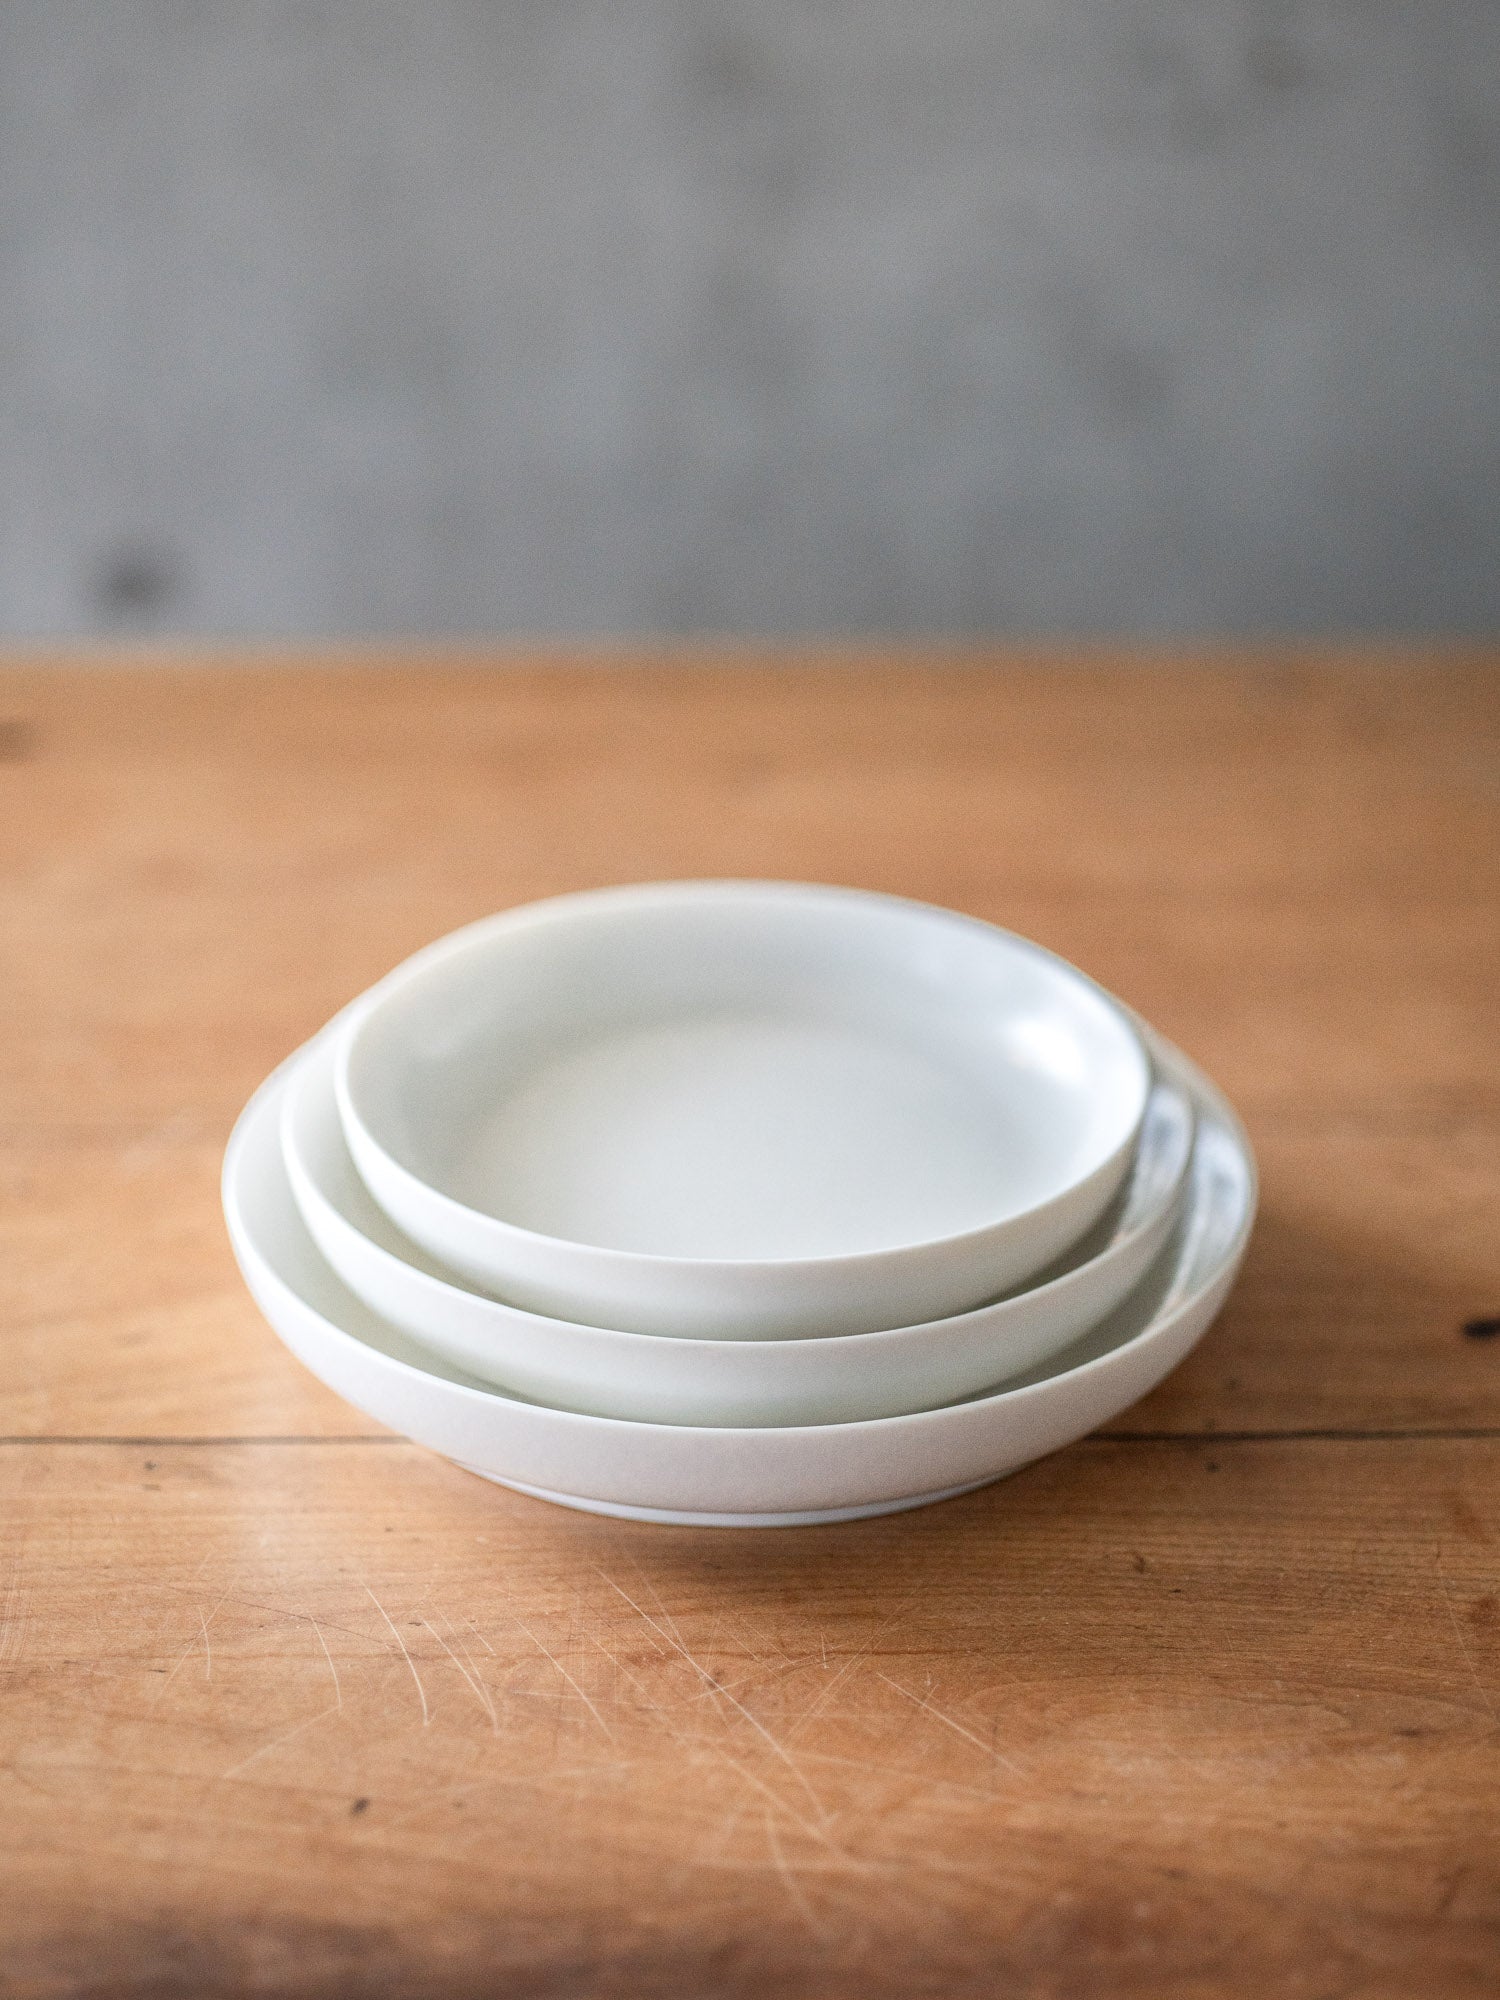 ReIRABO Round Plate – Quiet White